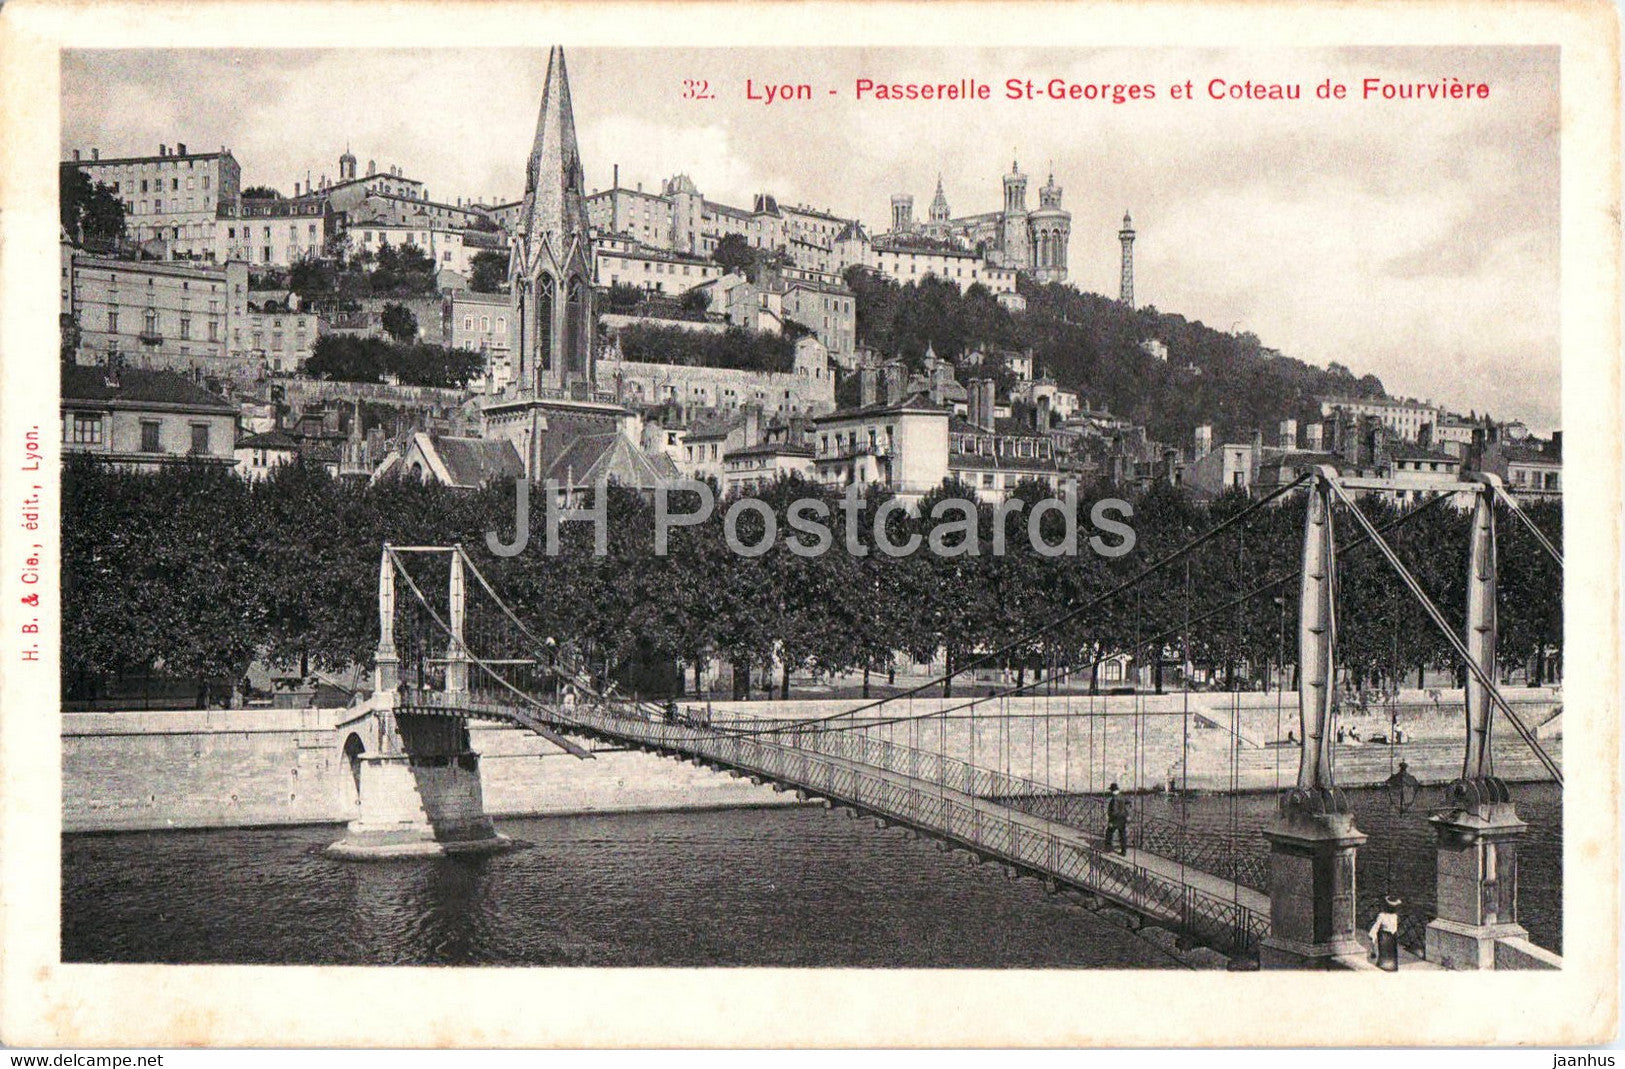 Lyon - Passerelle St Georges et Coteau de Fourviere - bridge - 32 - old postcard - France - unused - JH Postcards